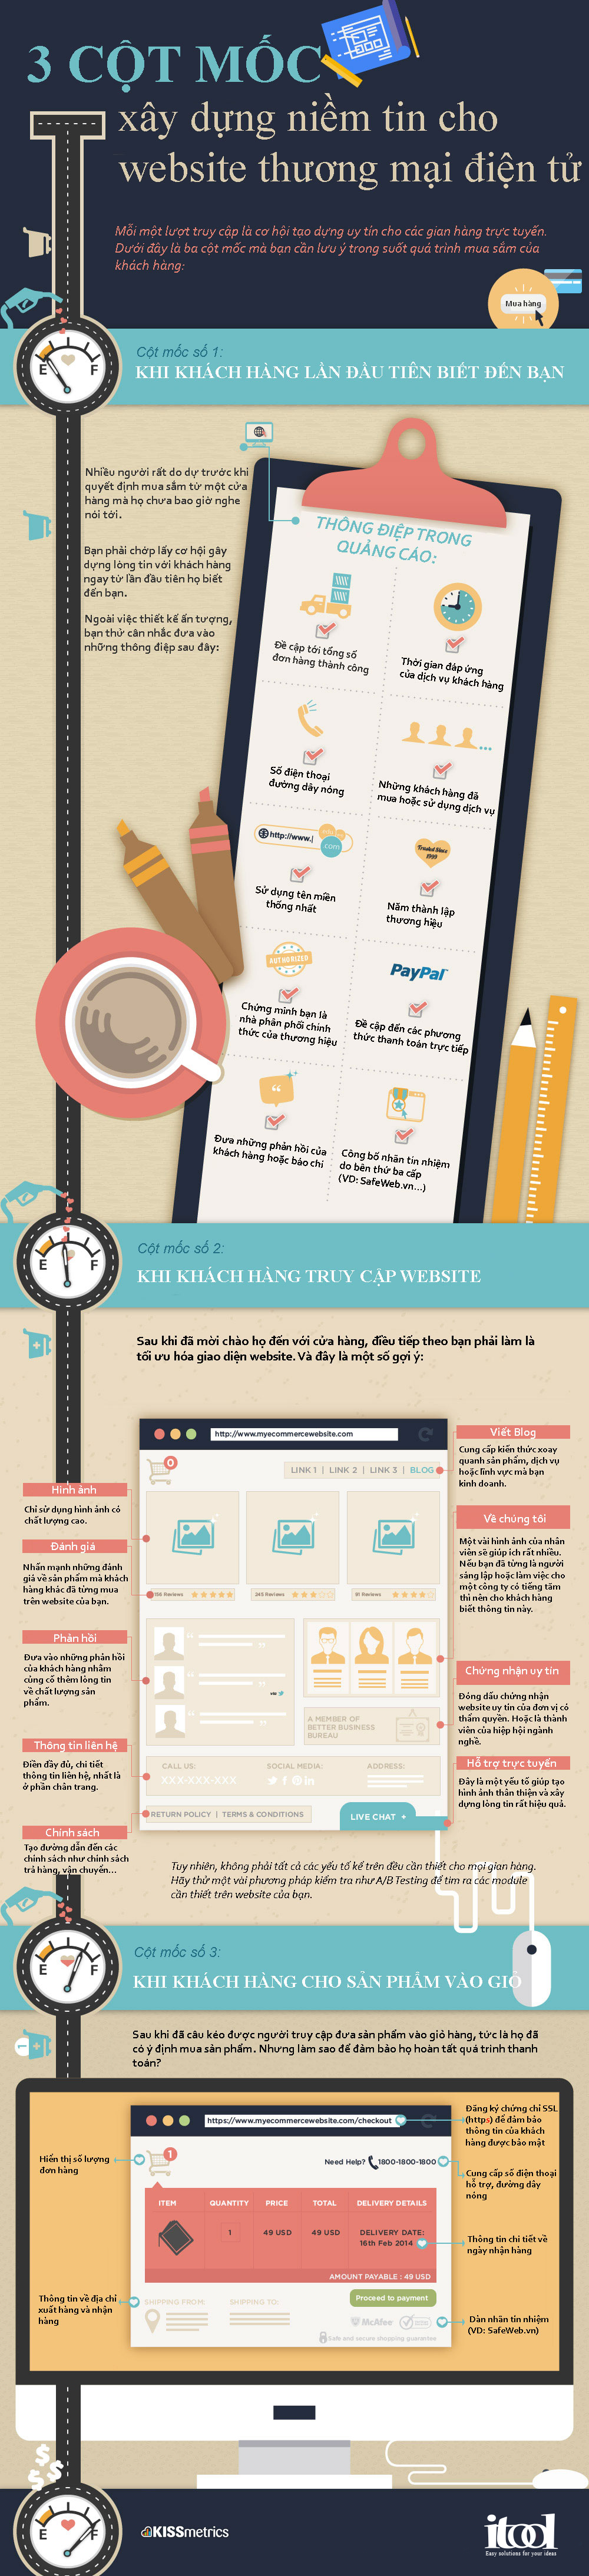 [Infographic] - 3 Bước để xây dựng niềm tin của người tiêu dùng vào website TMĐT